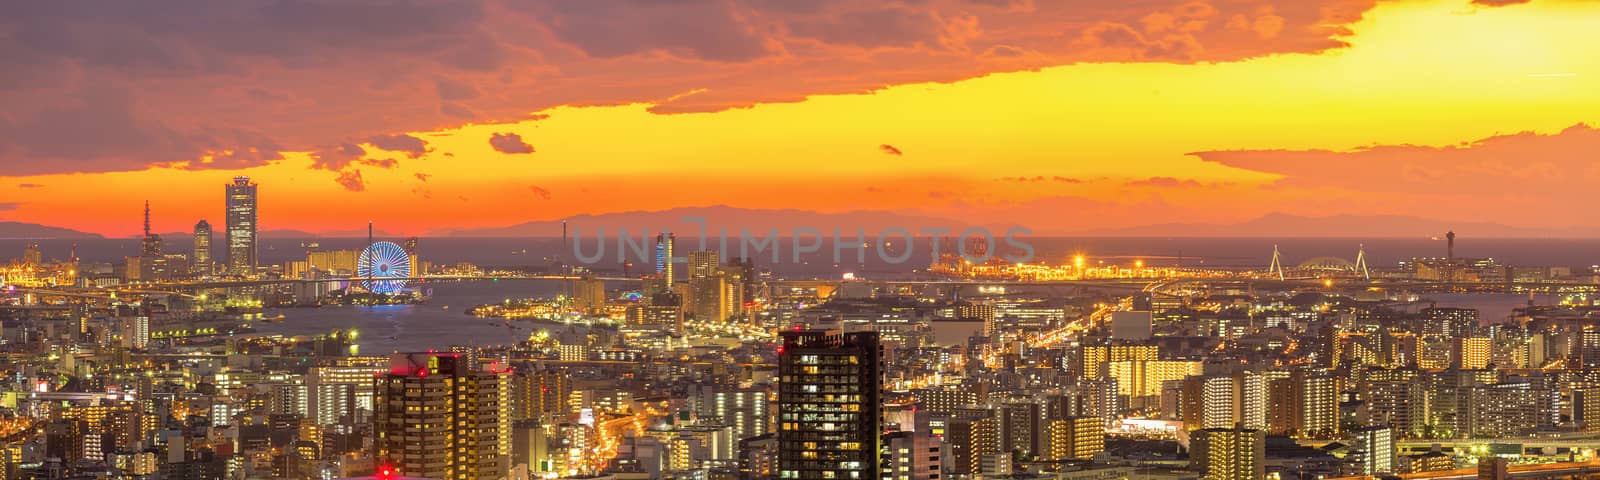 Osaka Skylines by vichie81